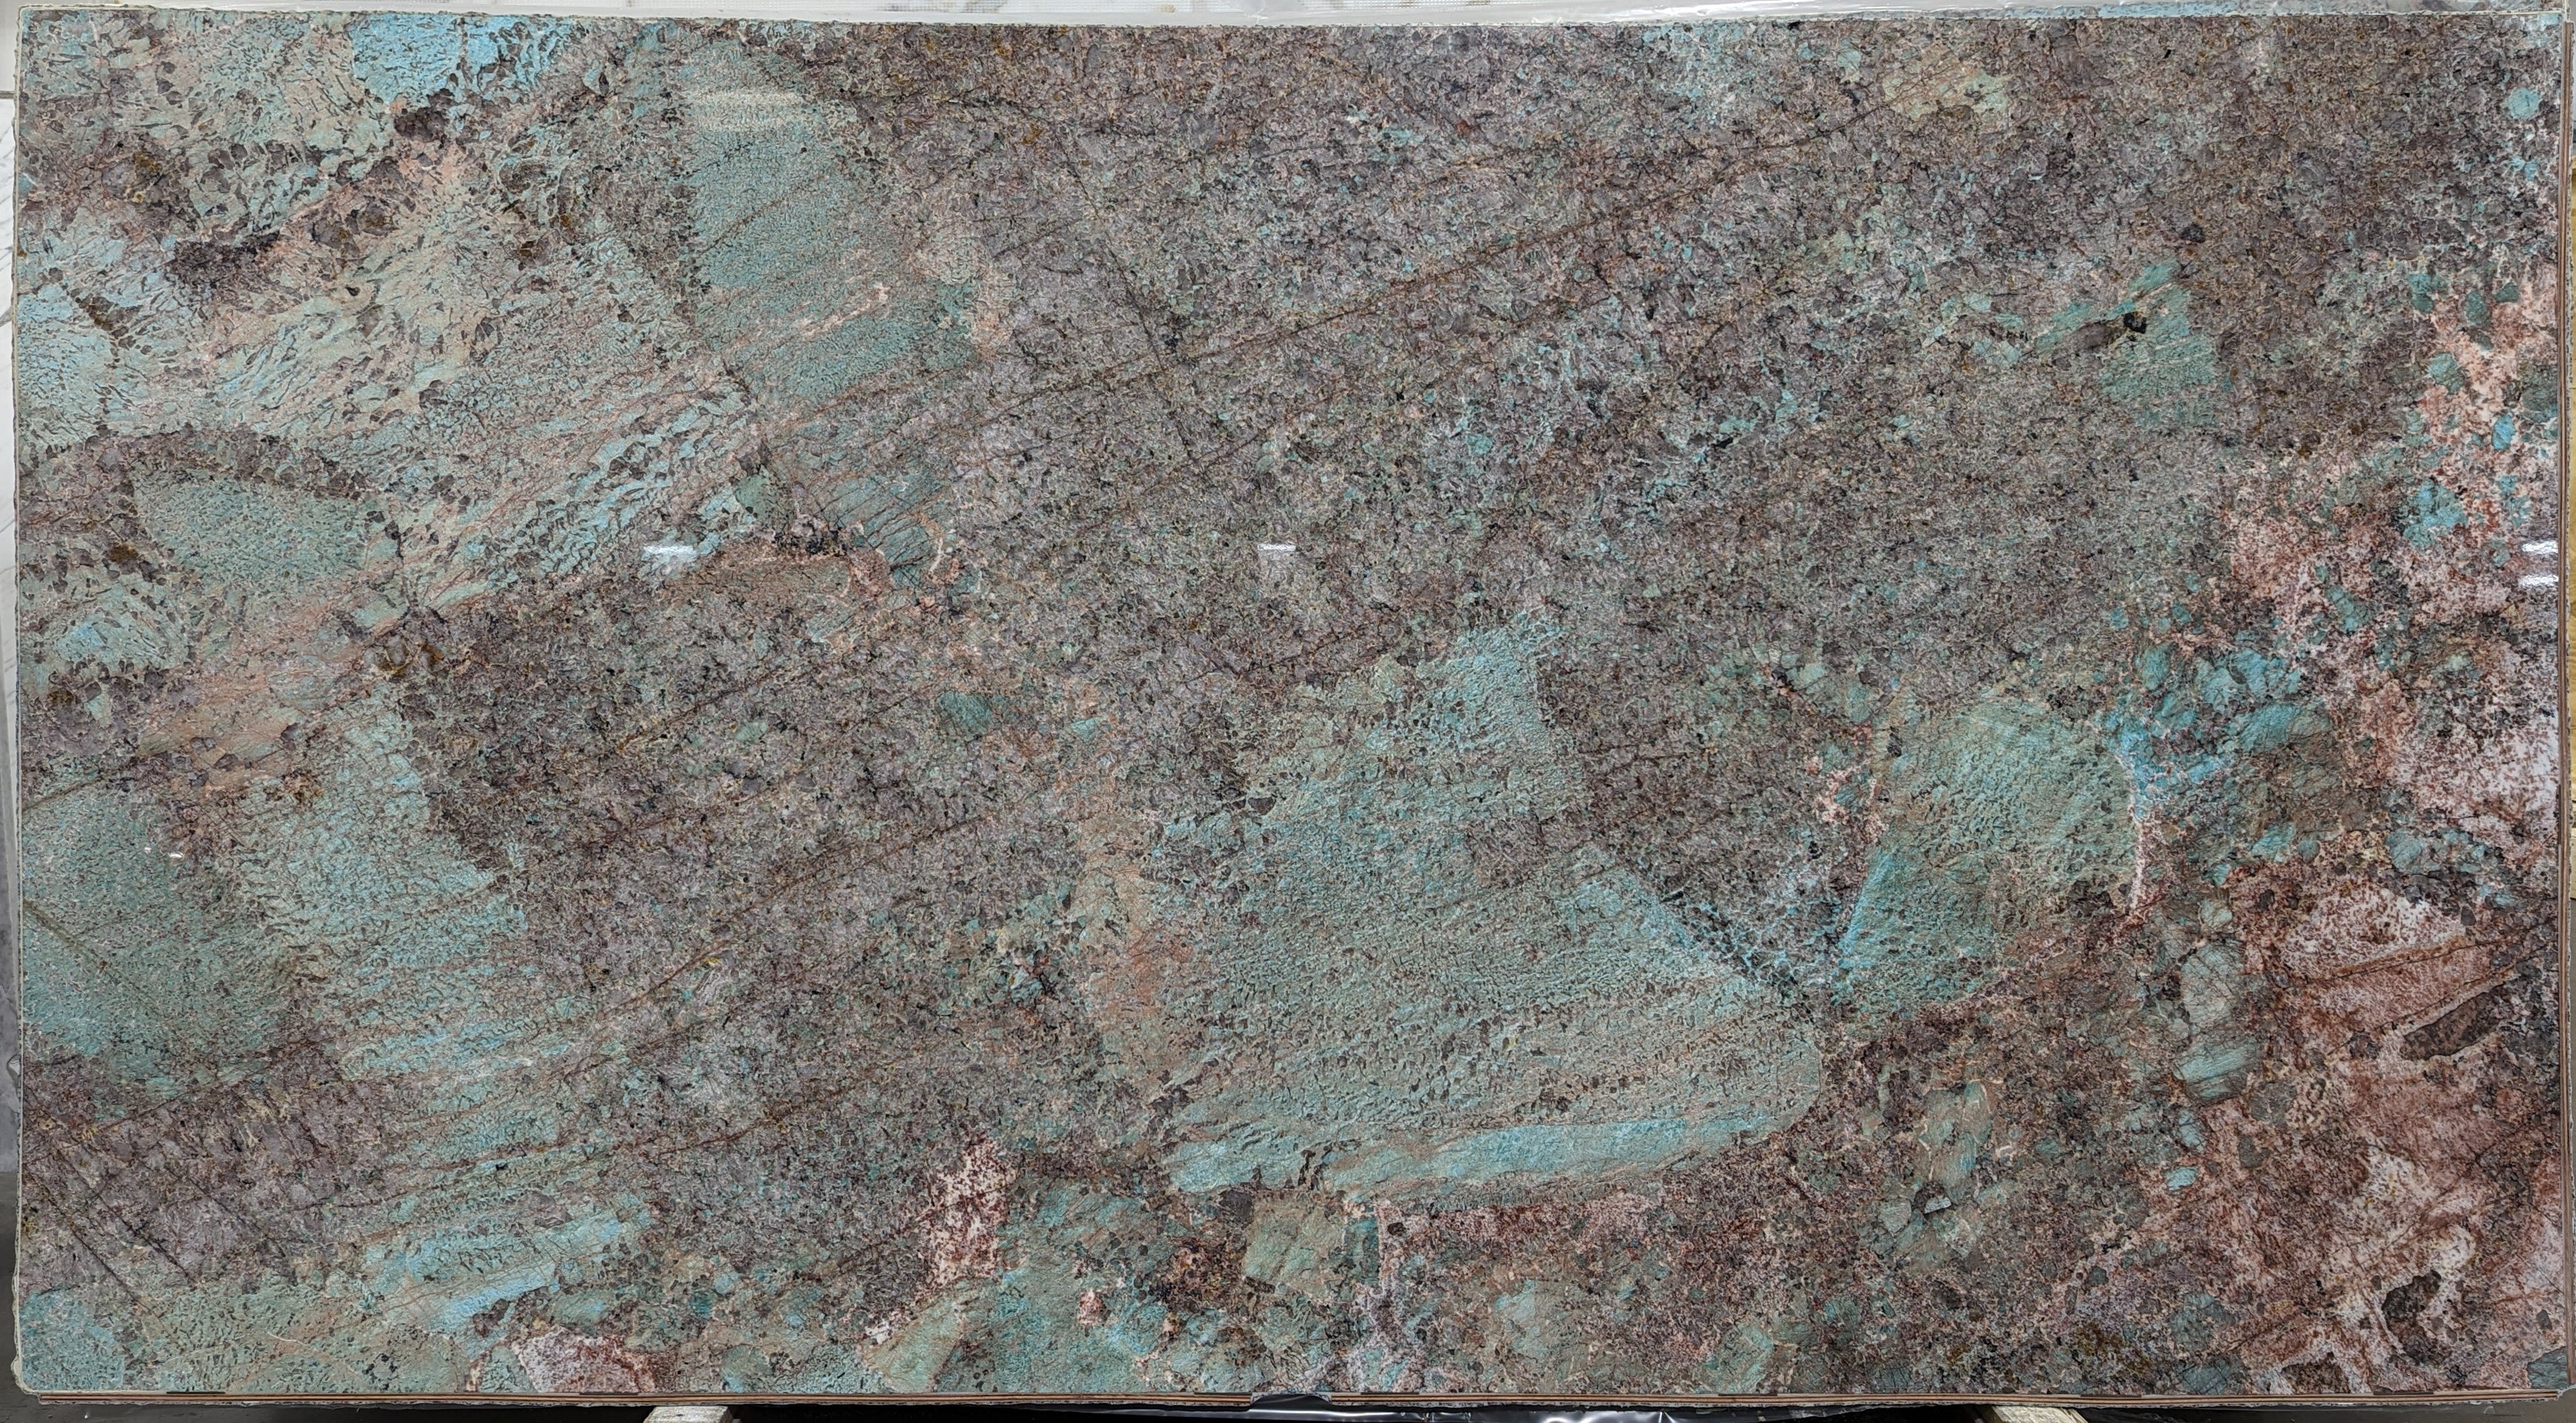  Amazonite Quartzite Slab 3/4  Polished Stone - 20921#32 -  64X119 